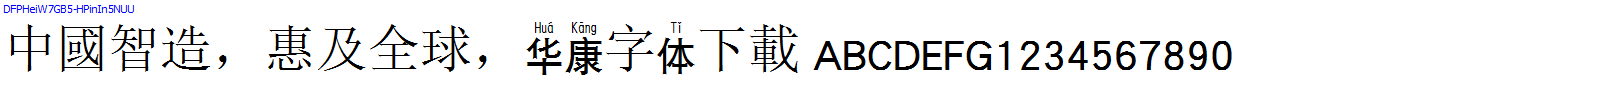 華康字體DFPHeiW7GB5-HPinIn5NUU.TTF